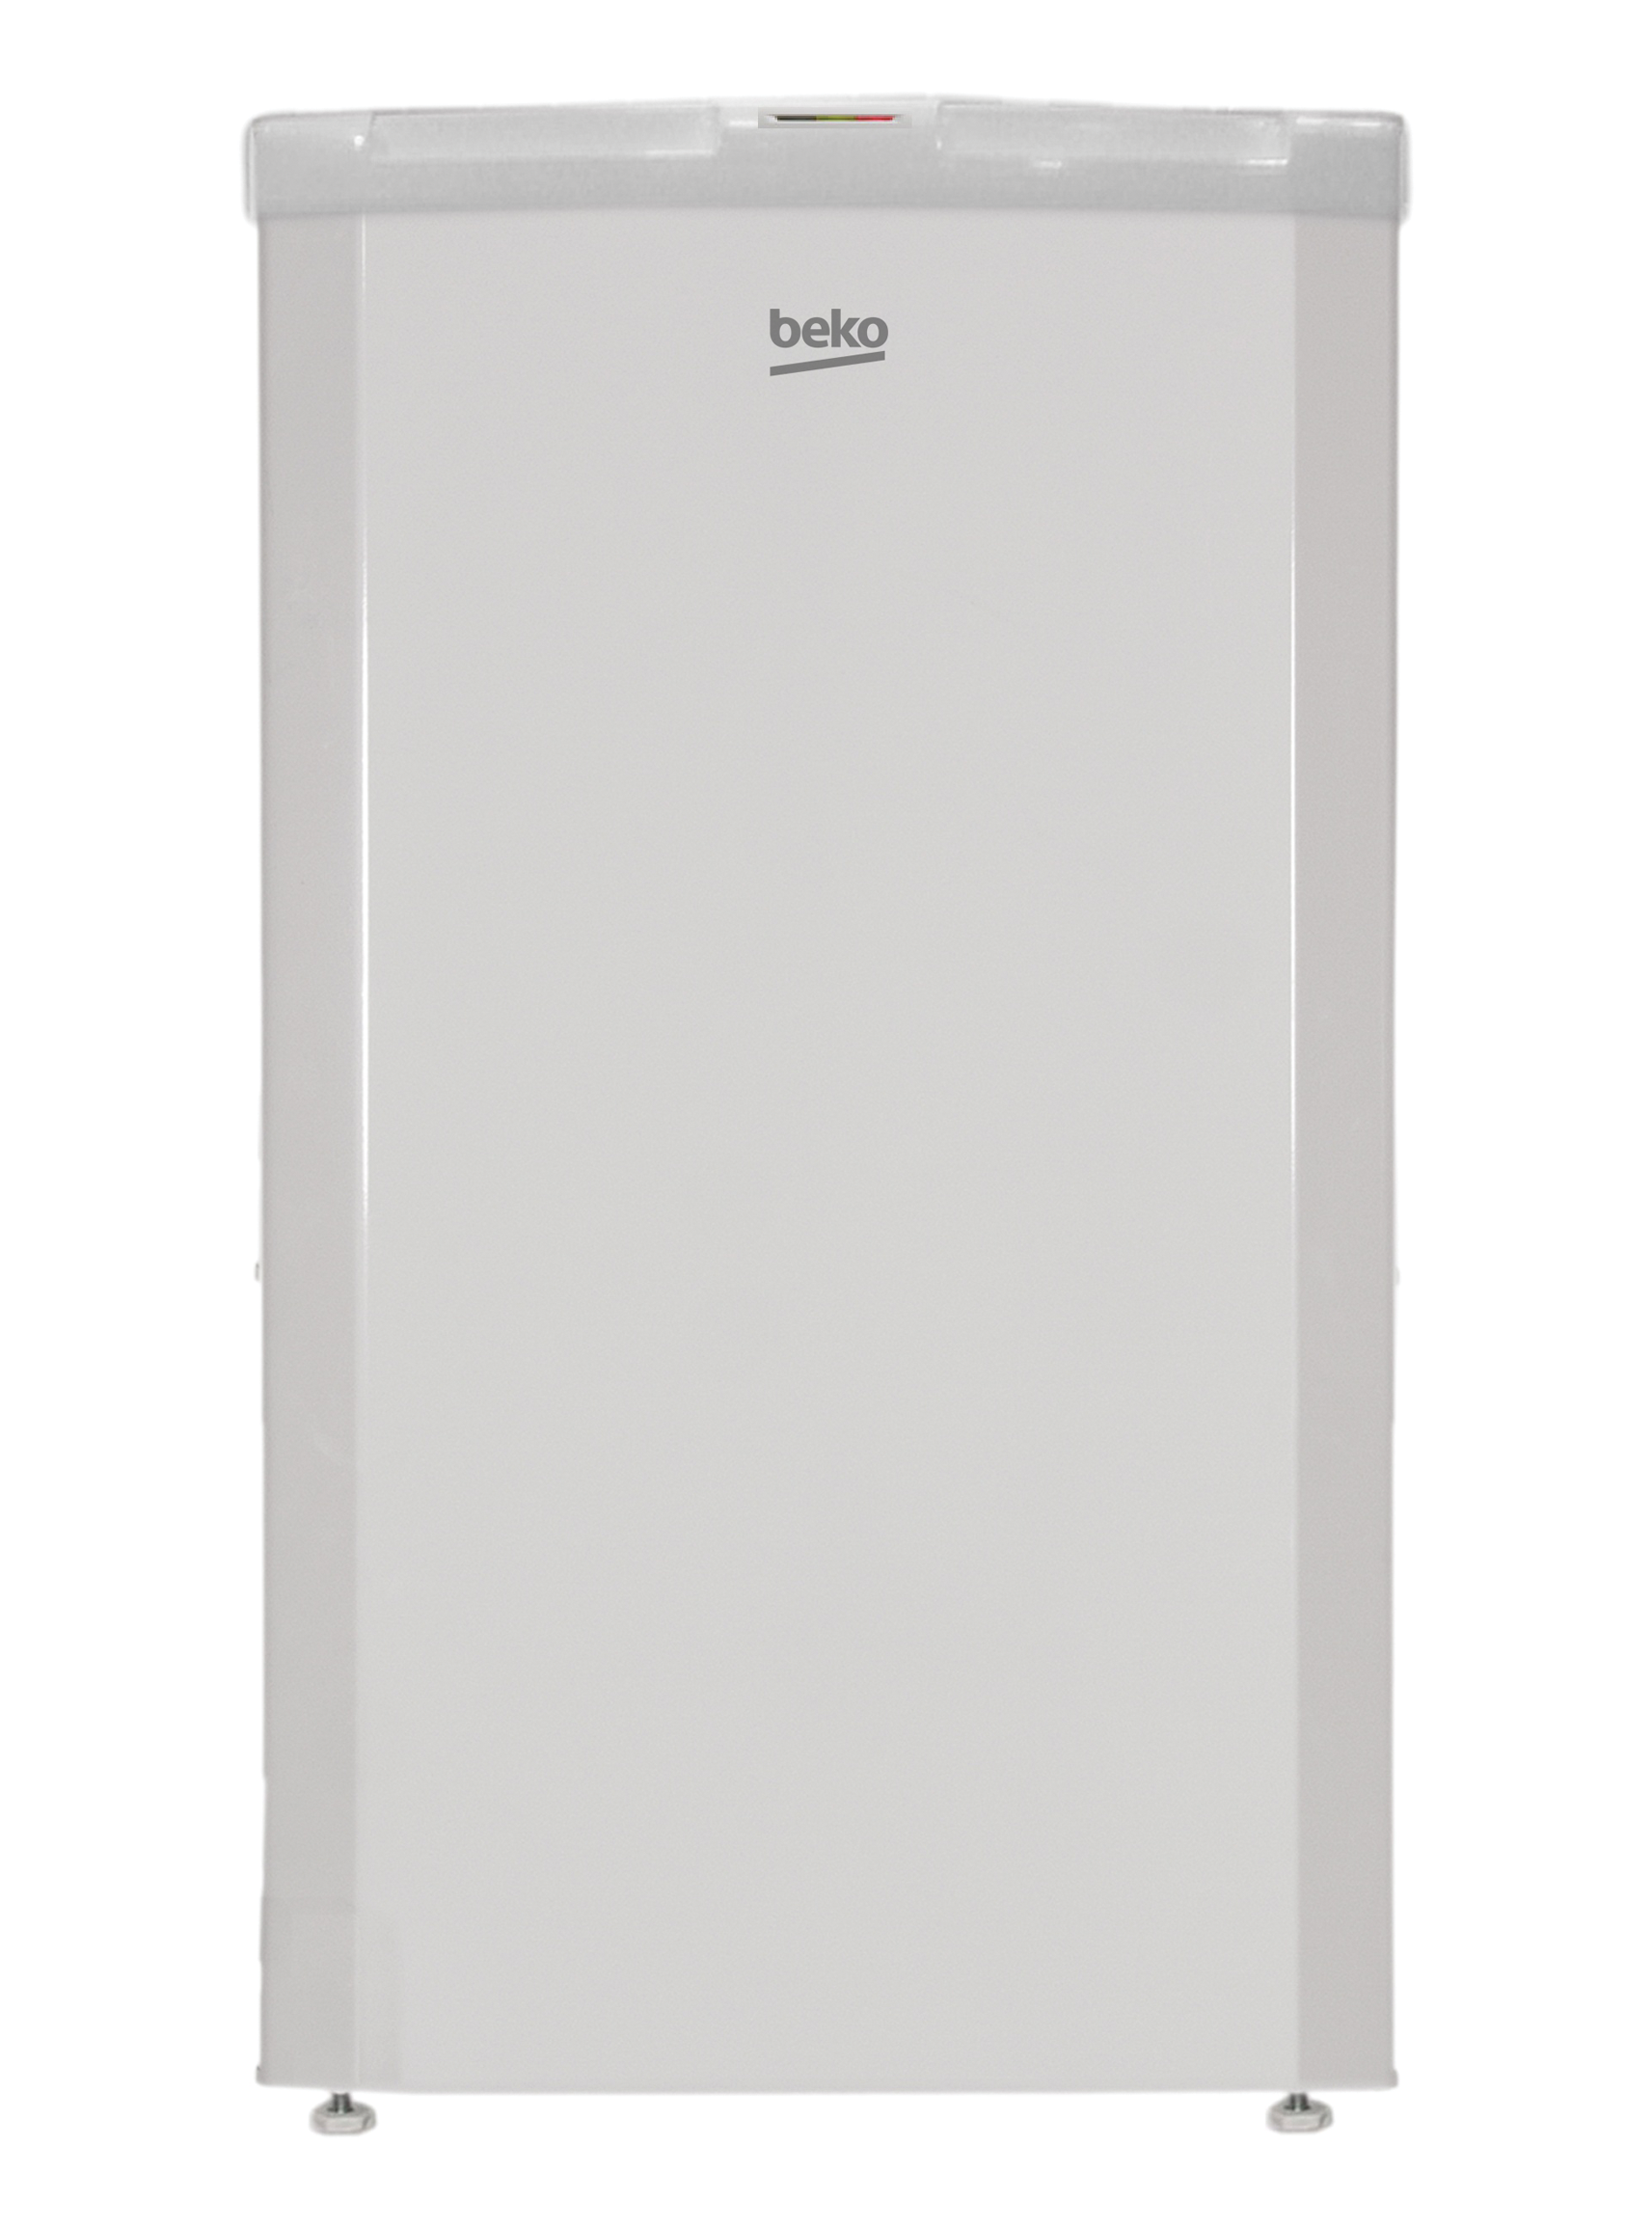 FSA13030N, Freezer (Upright, 117 L)